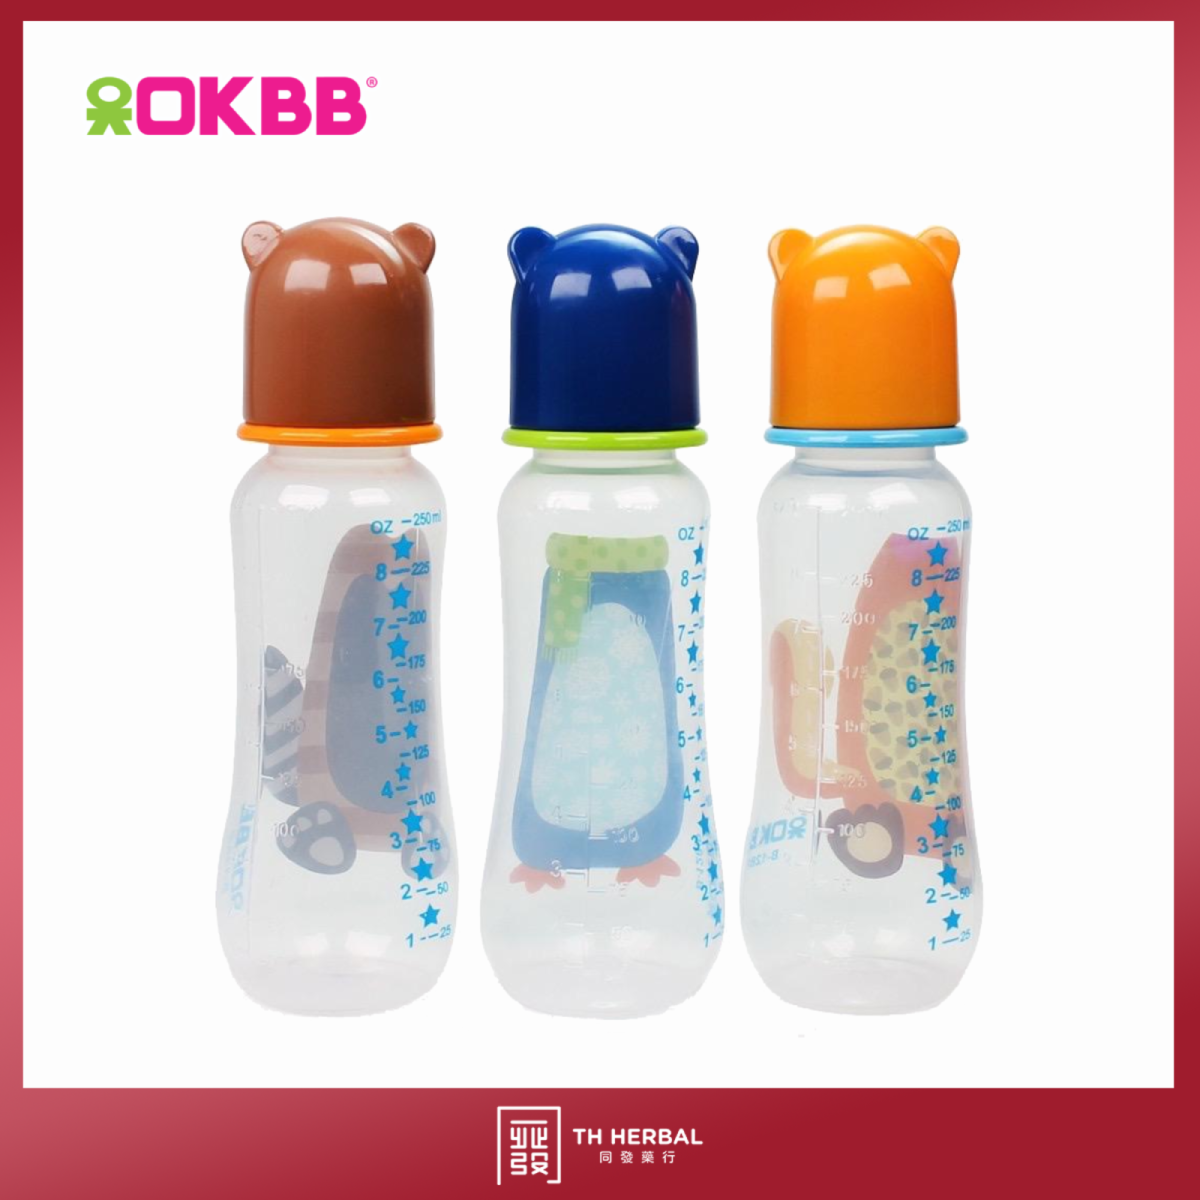 OKBB triple pack feeding bottles (2).png